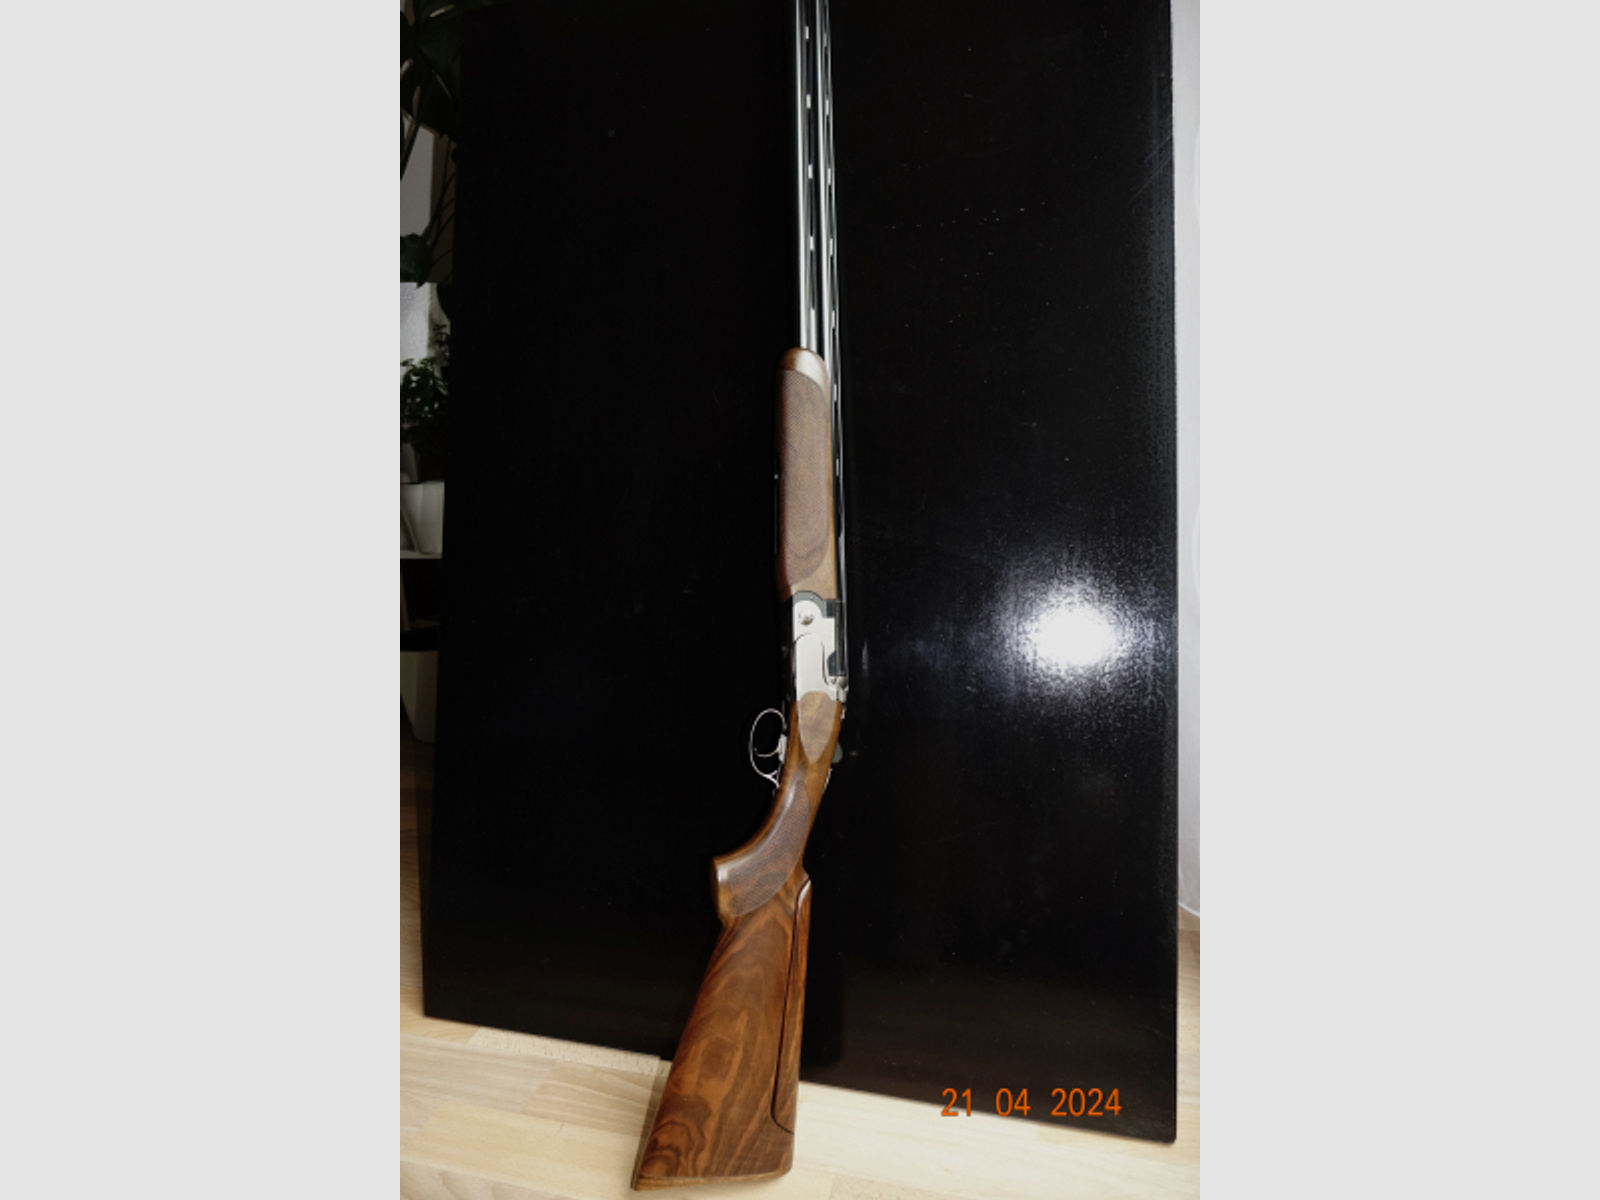 Beretta 692 12/76 76cm L